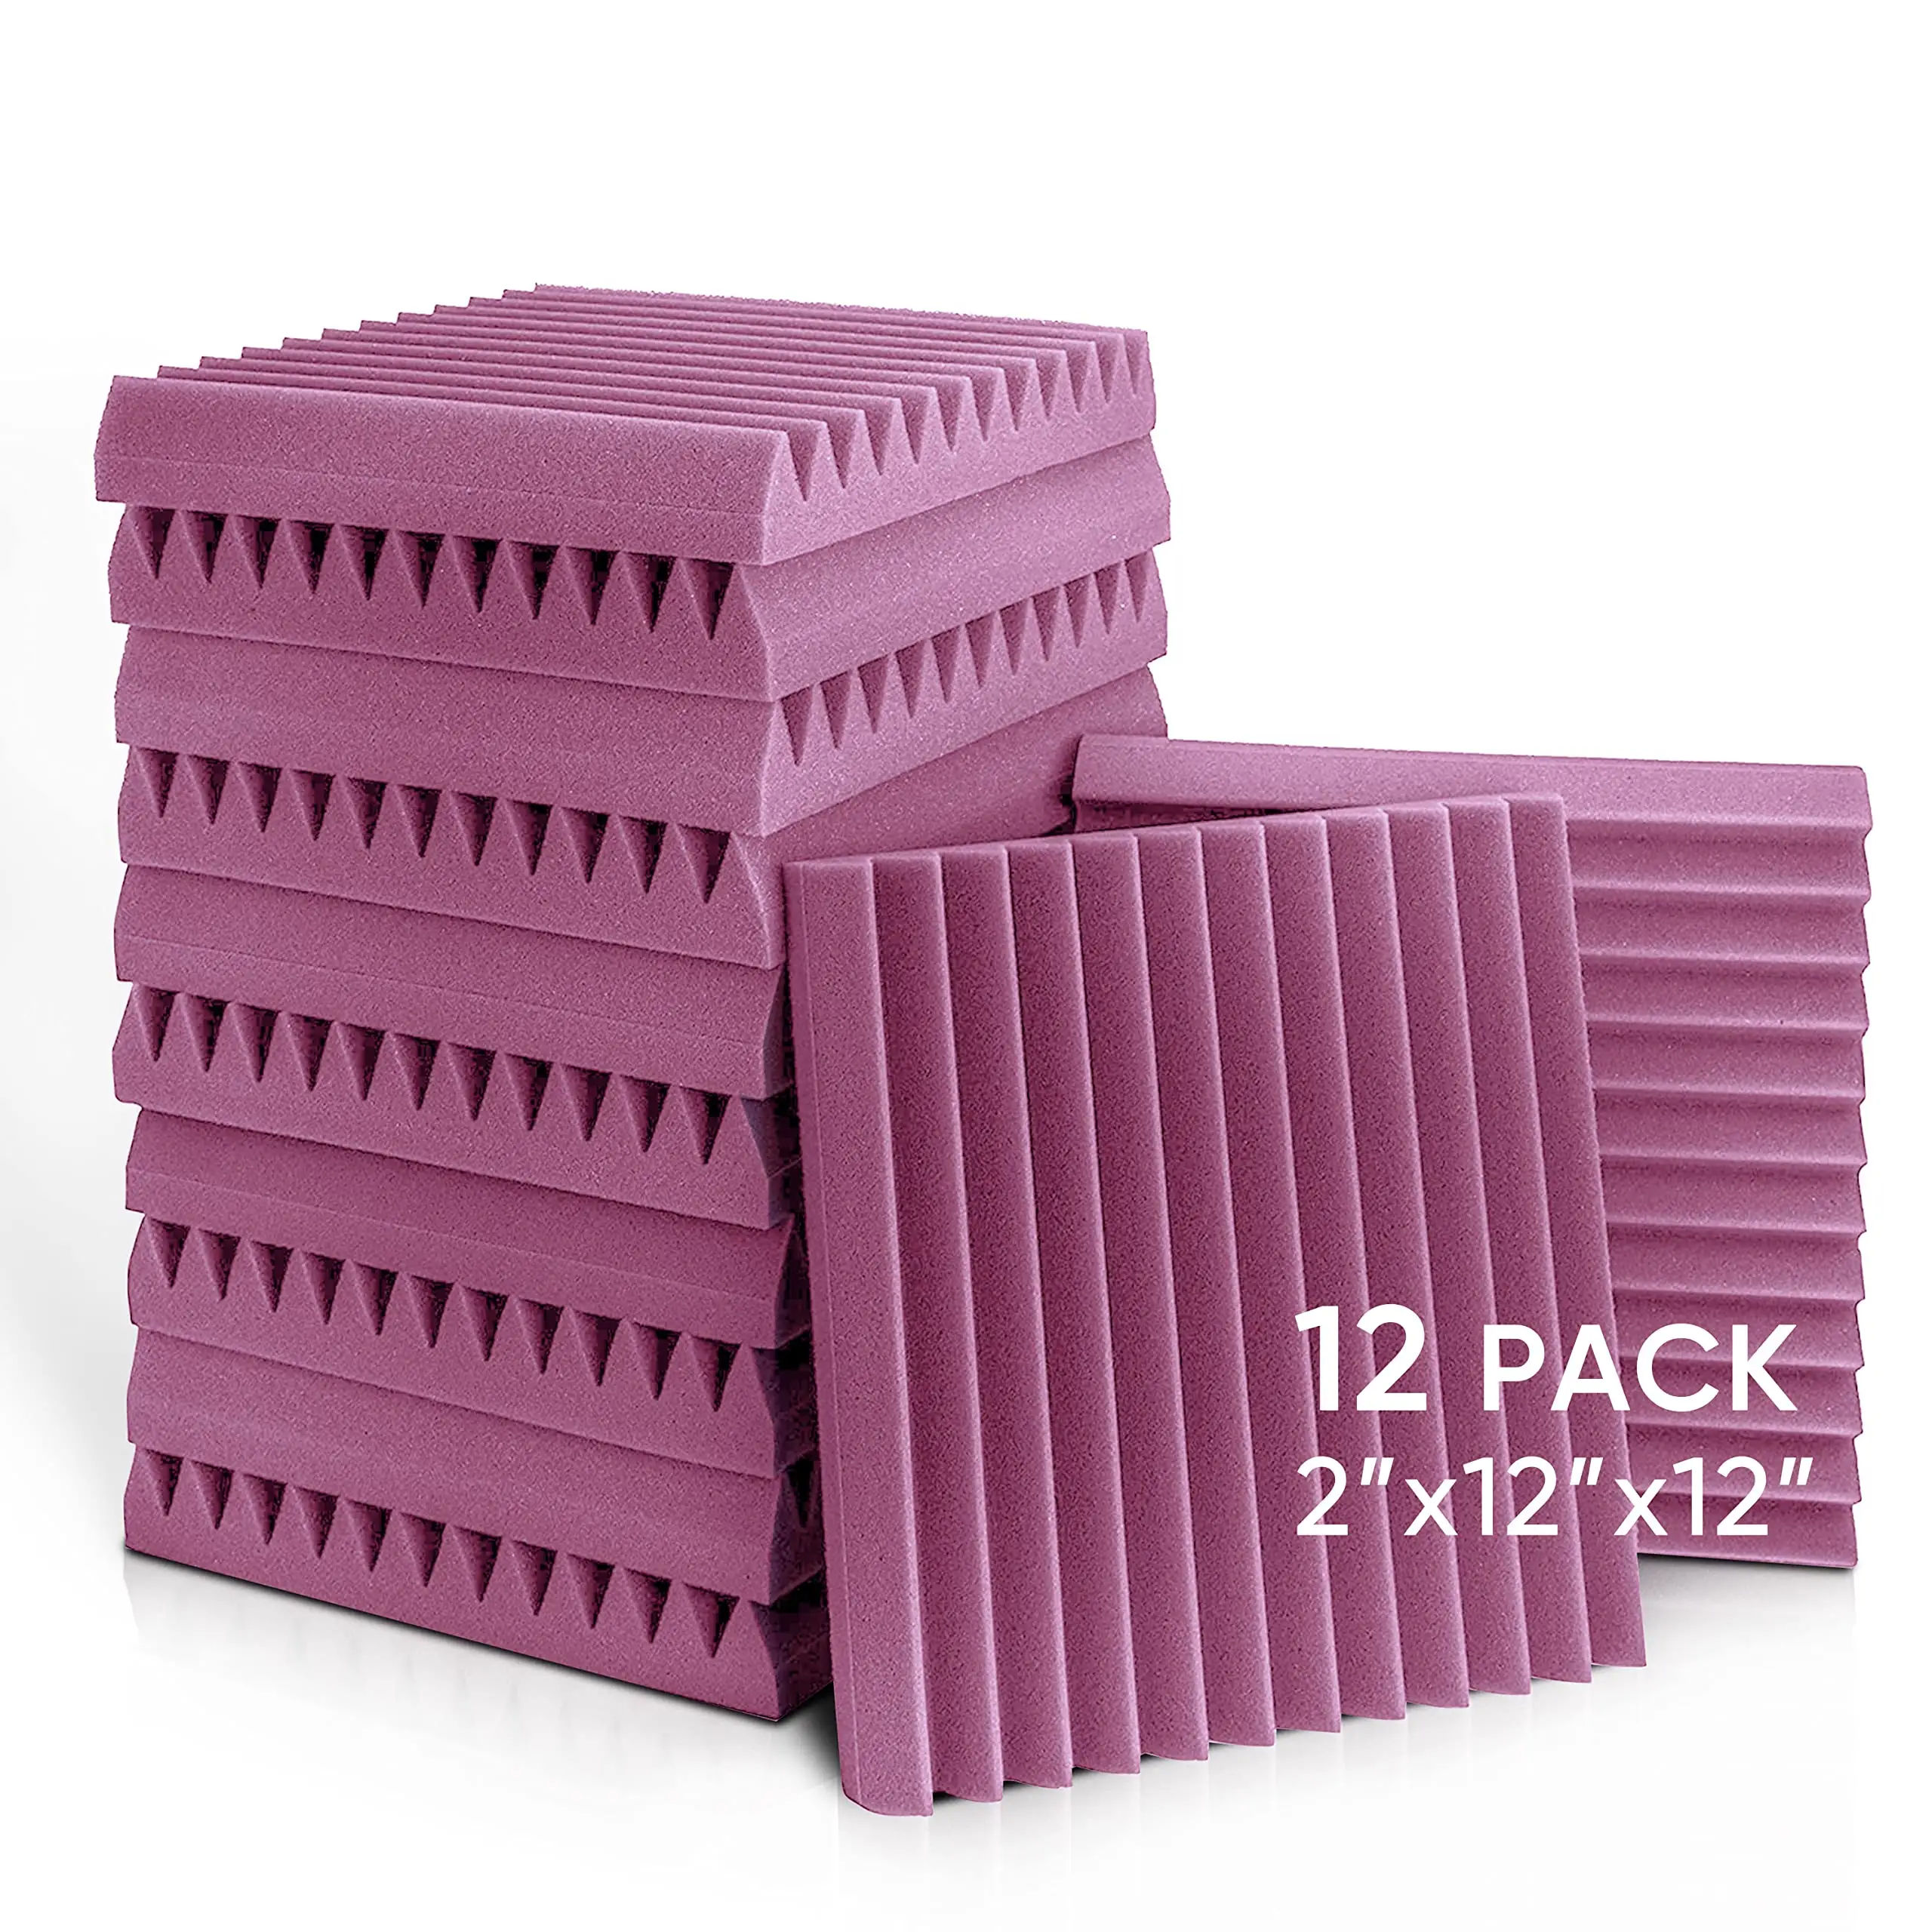 BONNO Studio Wedge Carreaux Panneaux de mousse acoustique violet 2 "X 12" X 12 "Panneaux sonores cales Rembourrage en mousse insonorisée